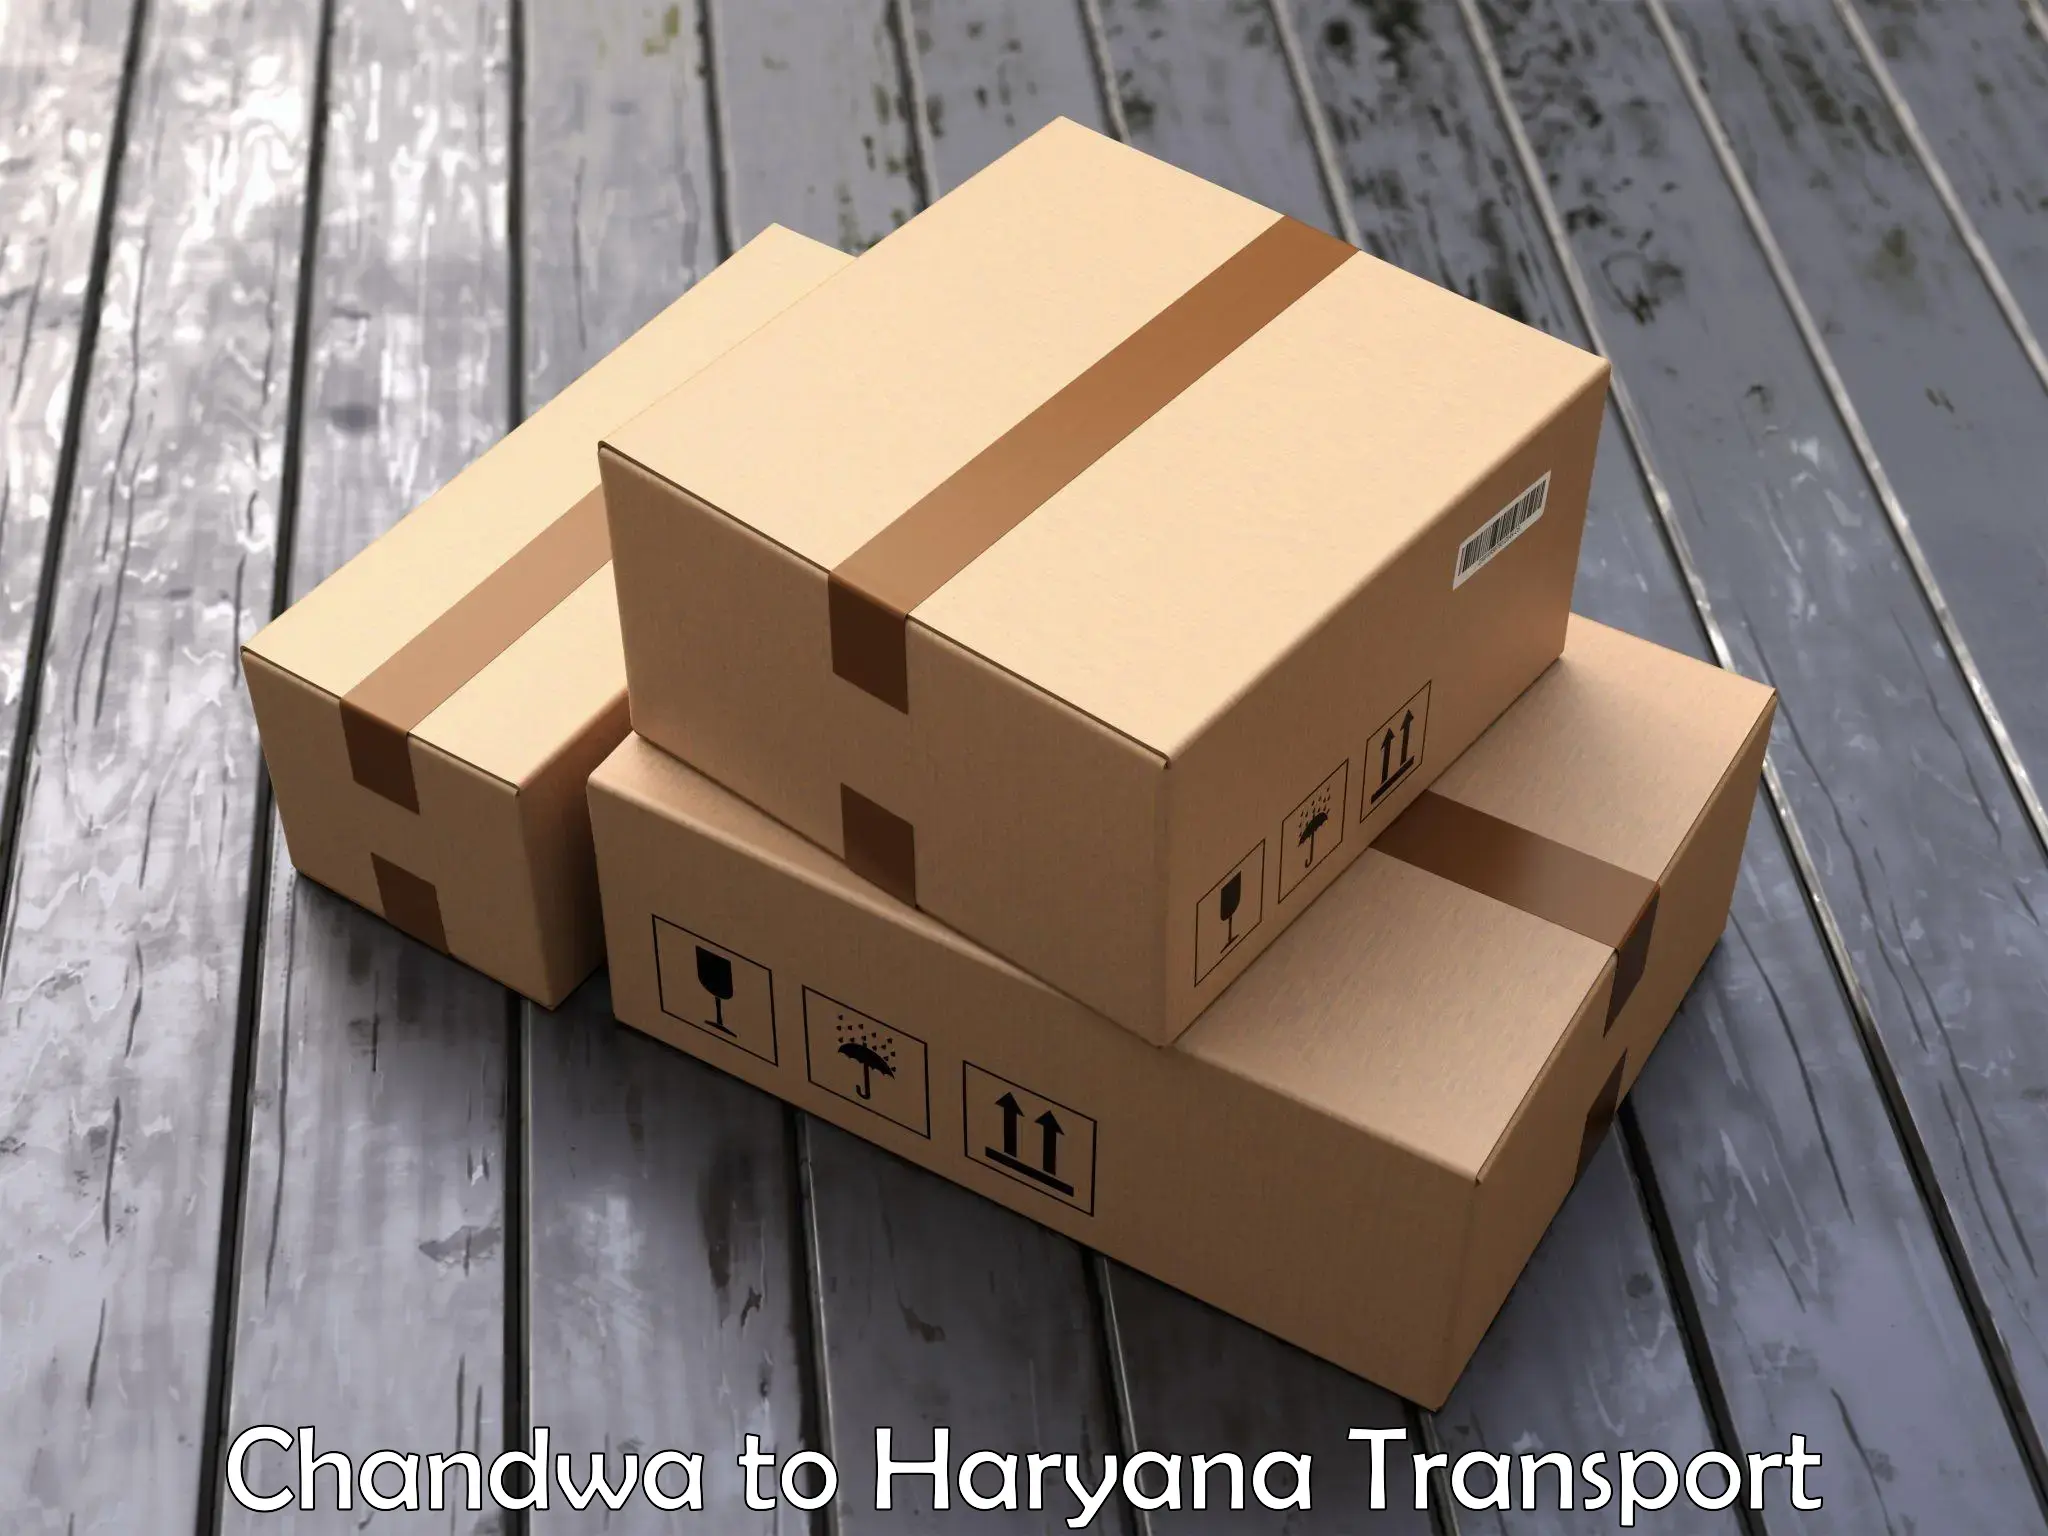 Lorry transport service Chandwa to Charkhari